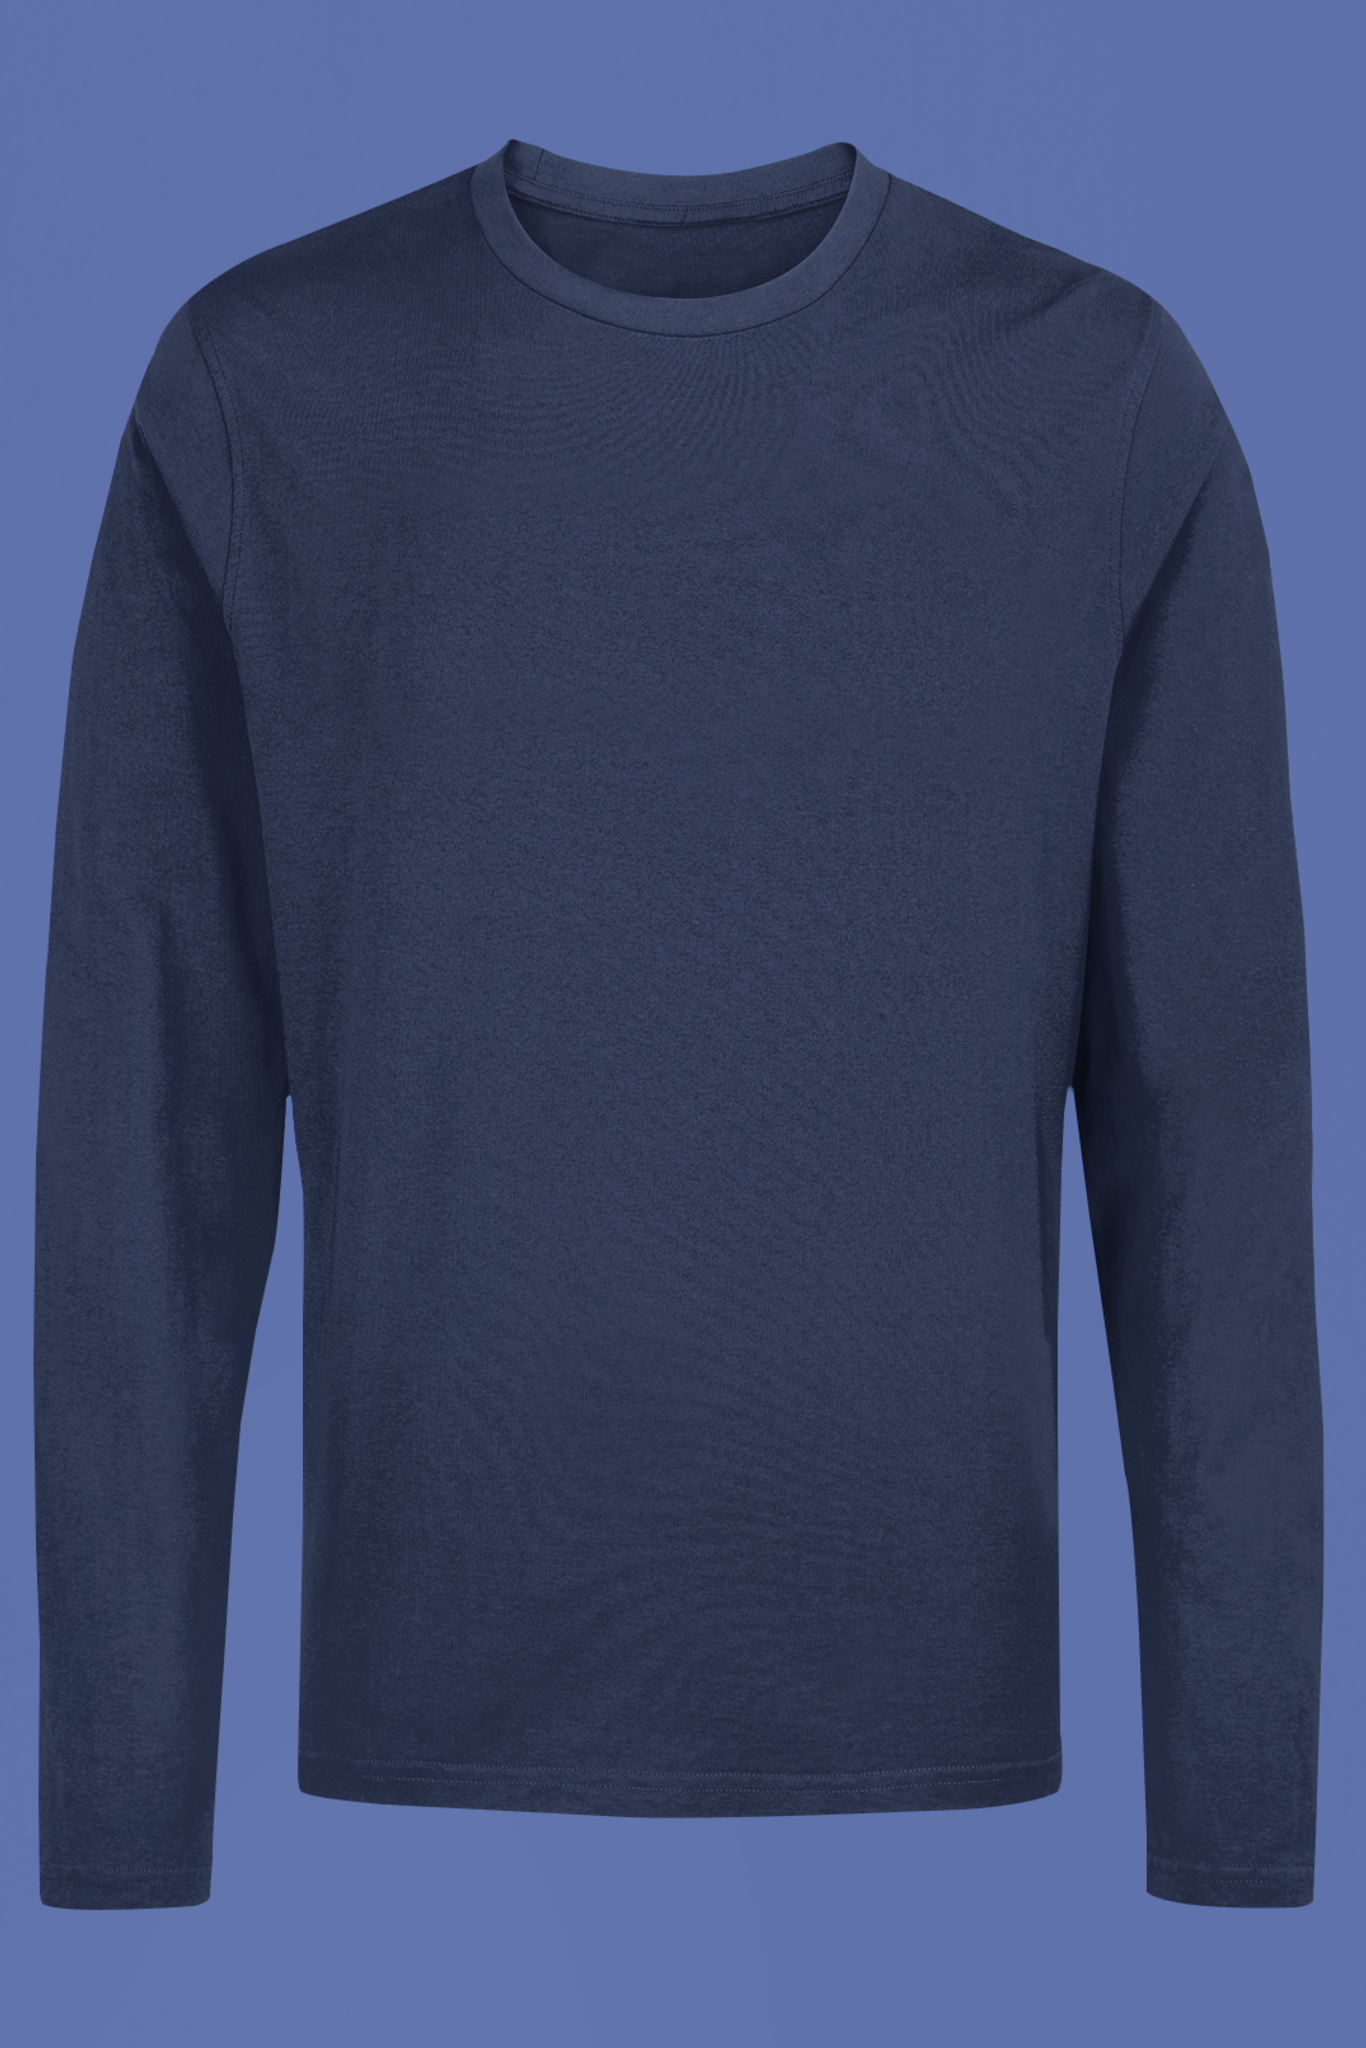 Men's Full Sleeve: Navy Blue T-Shirt